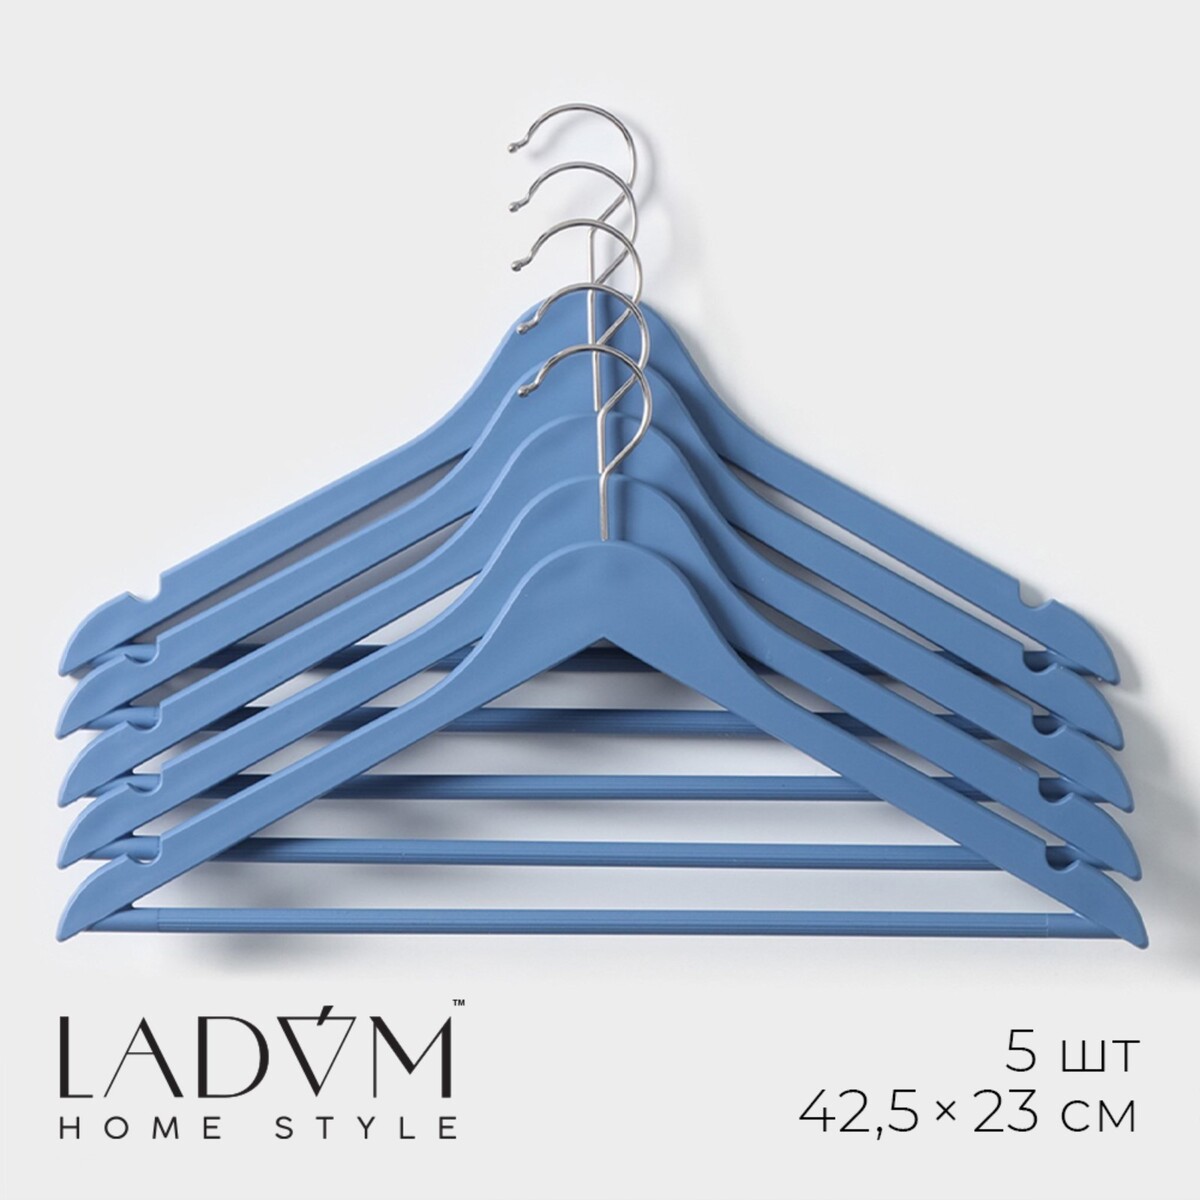 Плечики - вешалки для одежды деревянные с перекладиной ladо́m, 42,5×23 см, 5 шт, цвет синий плечики вешалки для одежды ladо́m